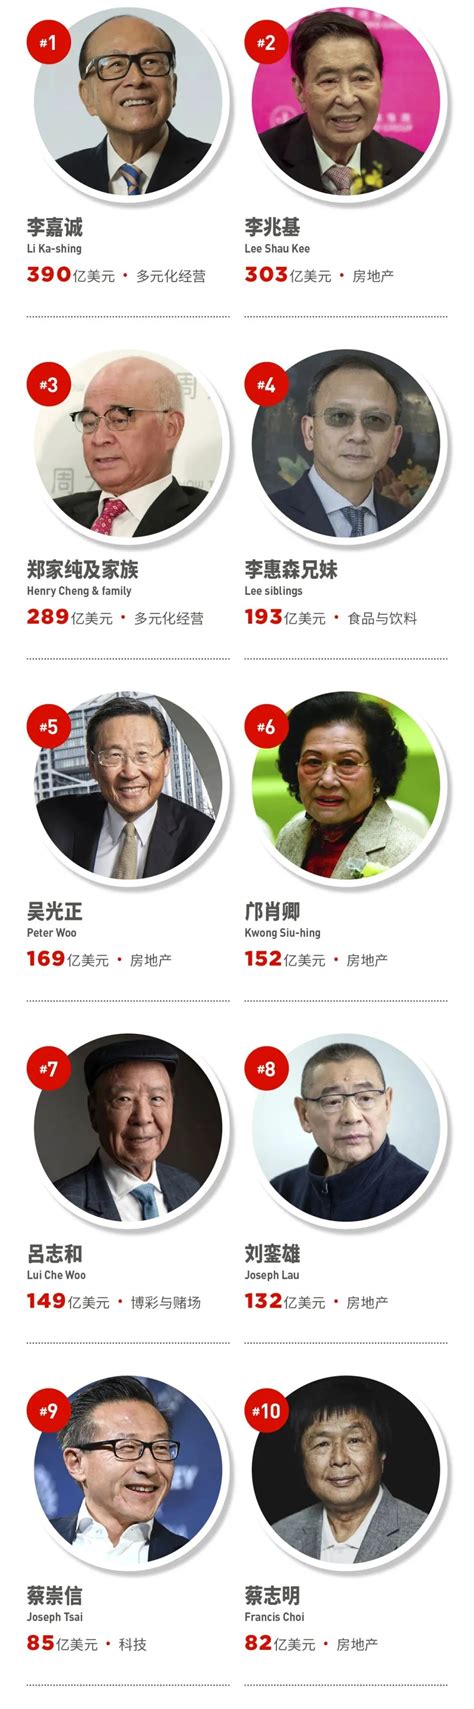 2019中国富豪榜排名_2019年全球富豪榜 - 随意贴